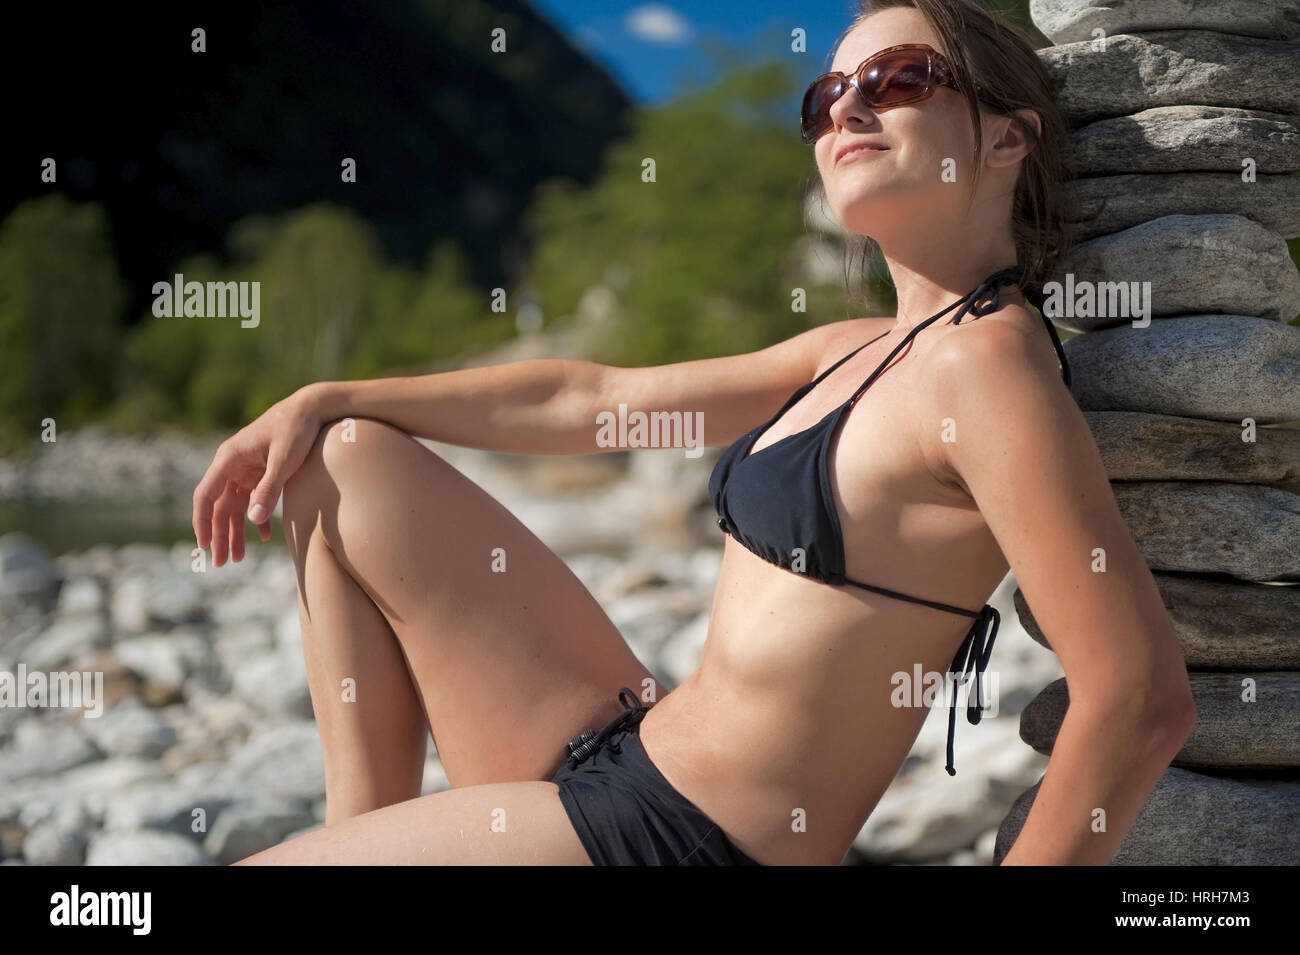 Model Release, Frau Im Bikini Lehnt eine Einer Steinpyramide, Valle  Verzasca, Schweiz - Frau im Bikini neben einer Steinpyramide  Stockfotografie - Alamy